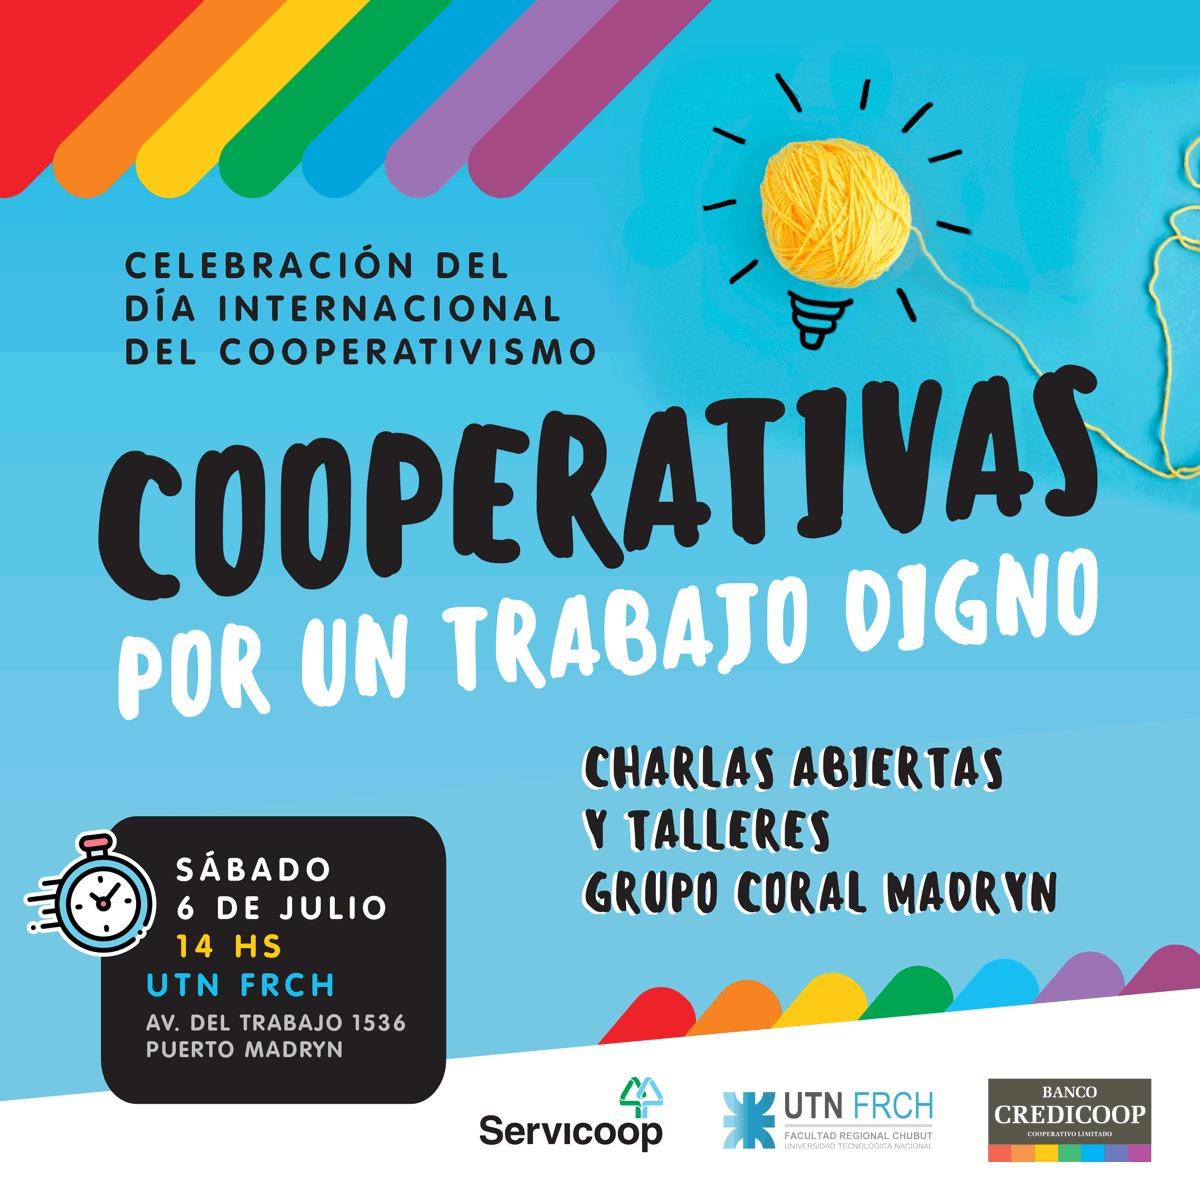 6 de Julio de 2019 – Día Internacional del Cooperativismo: “Cooperativas por un trabajo digno